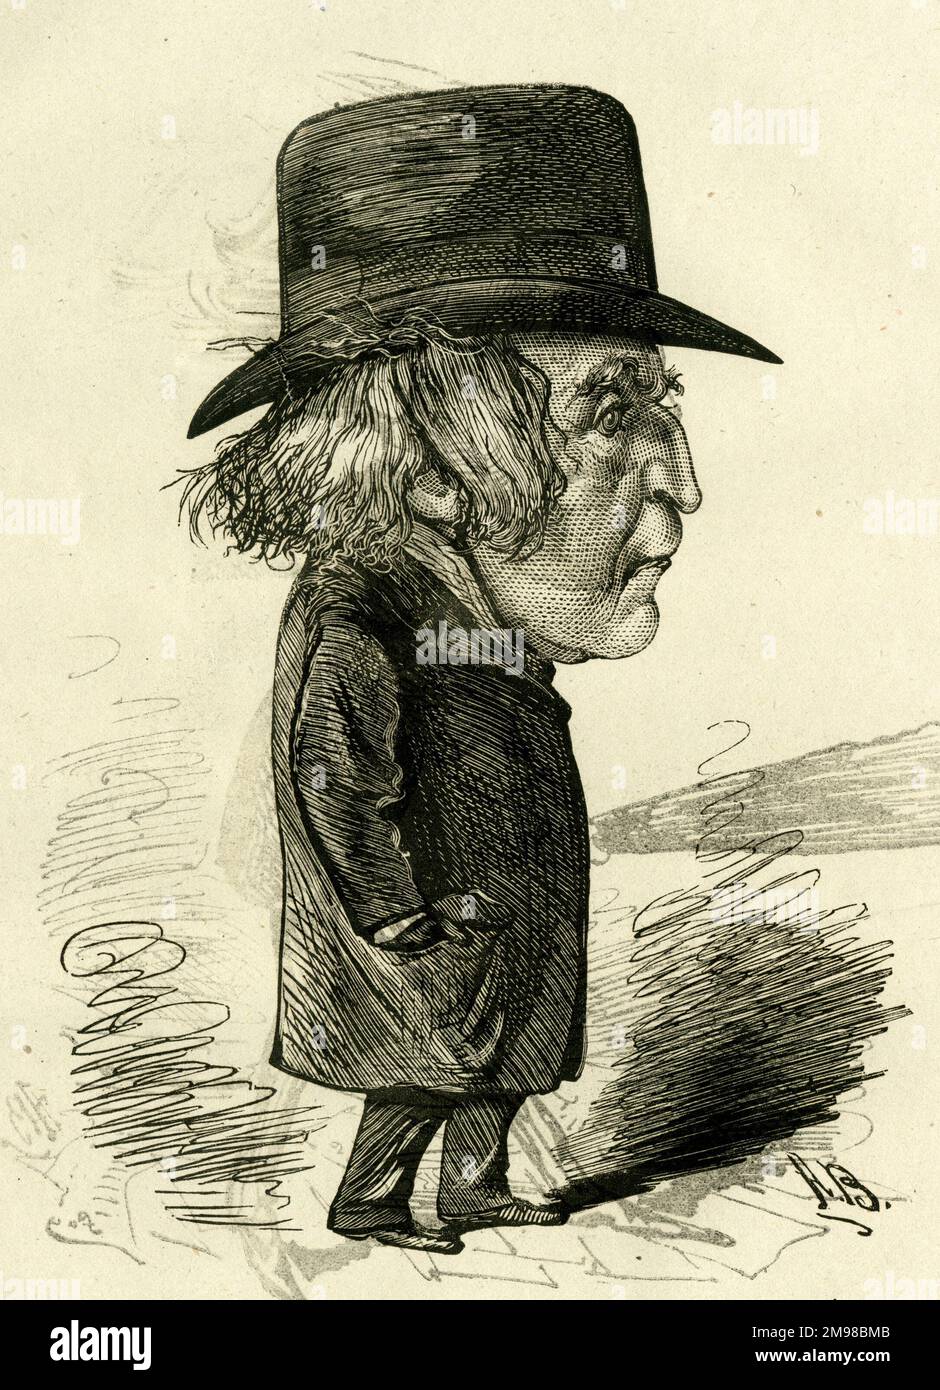 Cartoon, Horace Wigan (ca. 1815-1885), Schauspieler, Dramatiker und Theatermanager, bekannt für seine Detektivrolle. Ein sehr liebenswürdiger Gentleman, obwohl er nicht immer fröhlich aussieht. Stockfoto